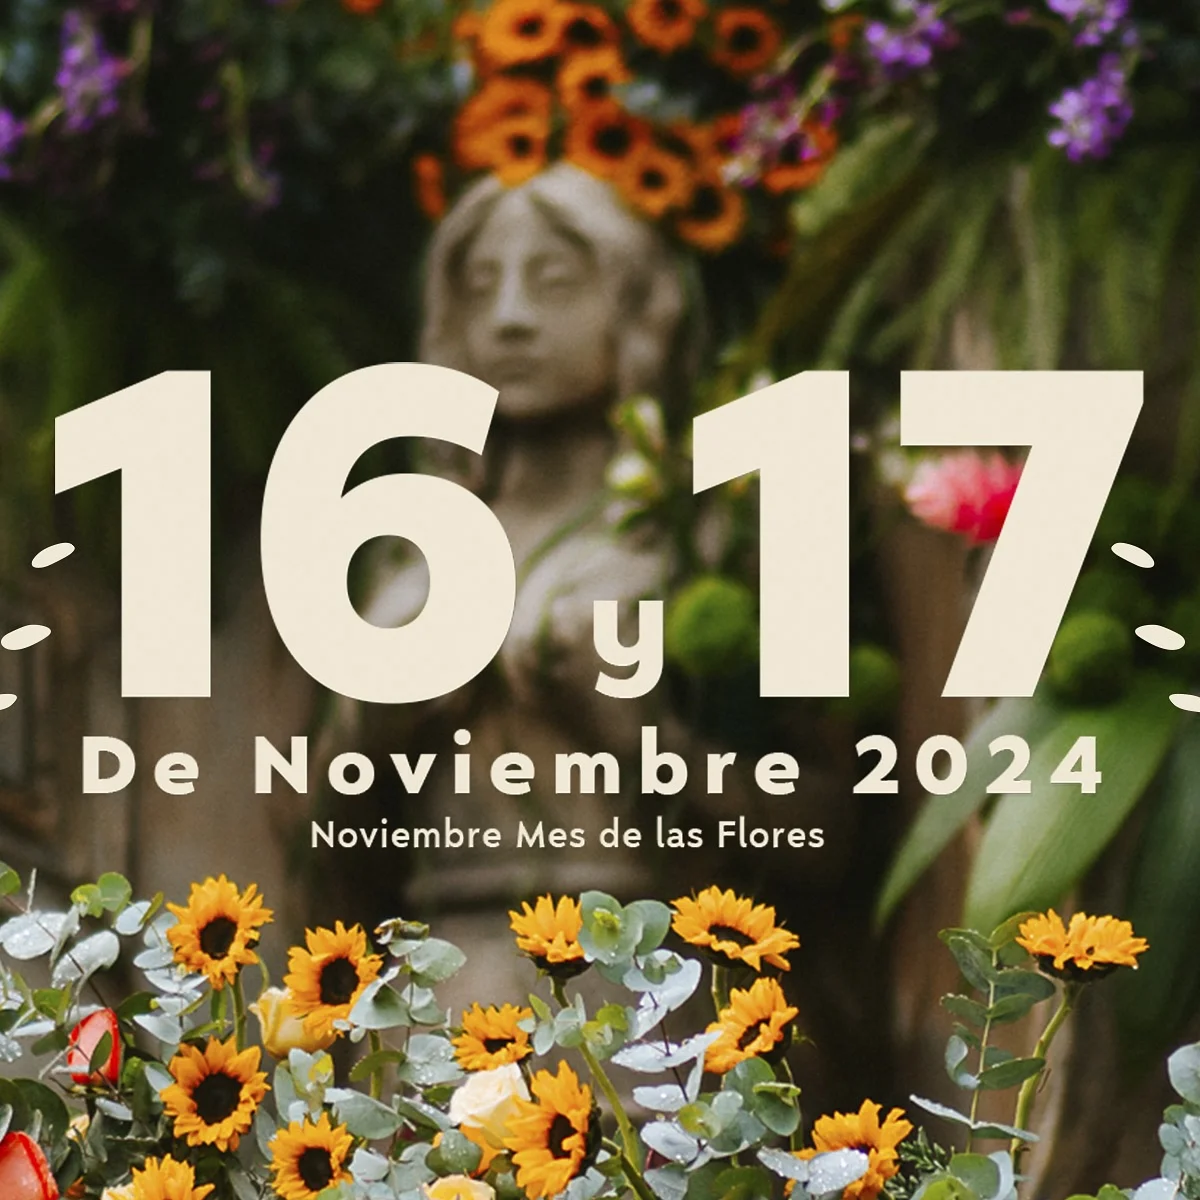 El Festival de las Flores en la Antigua Guatemala